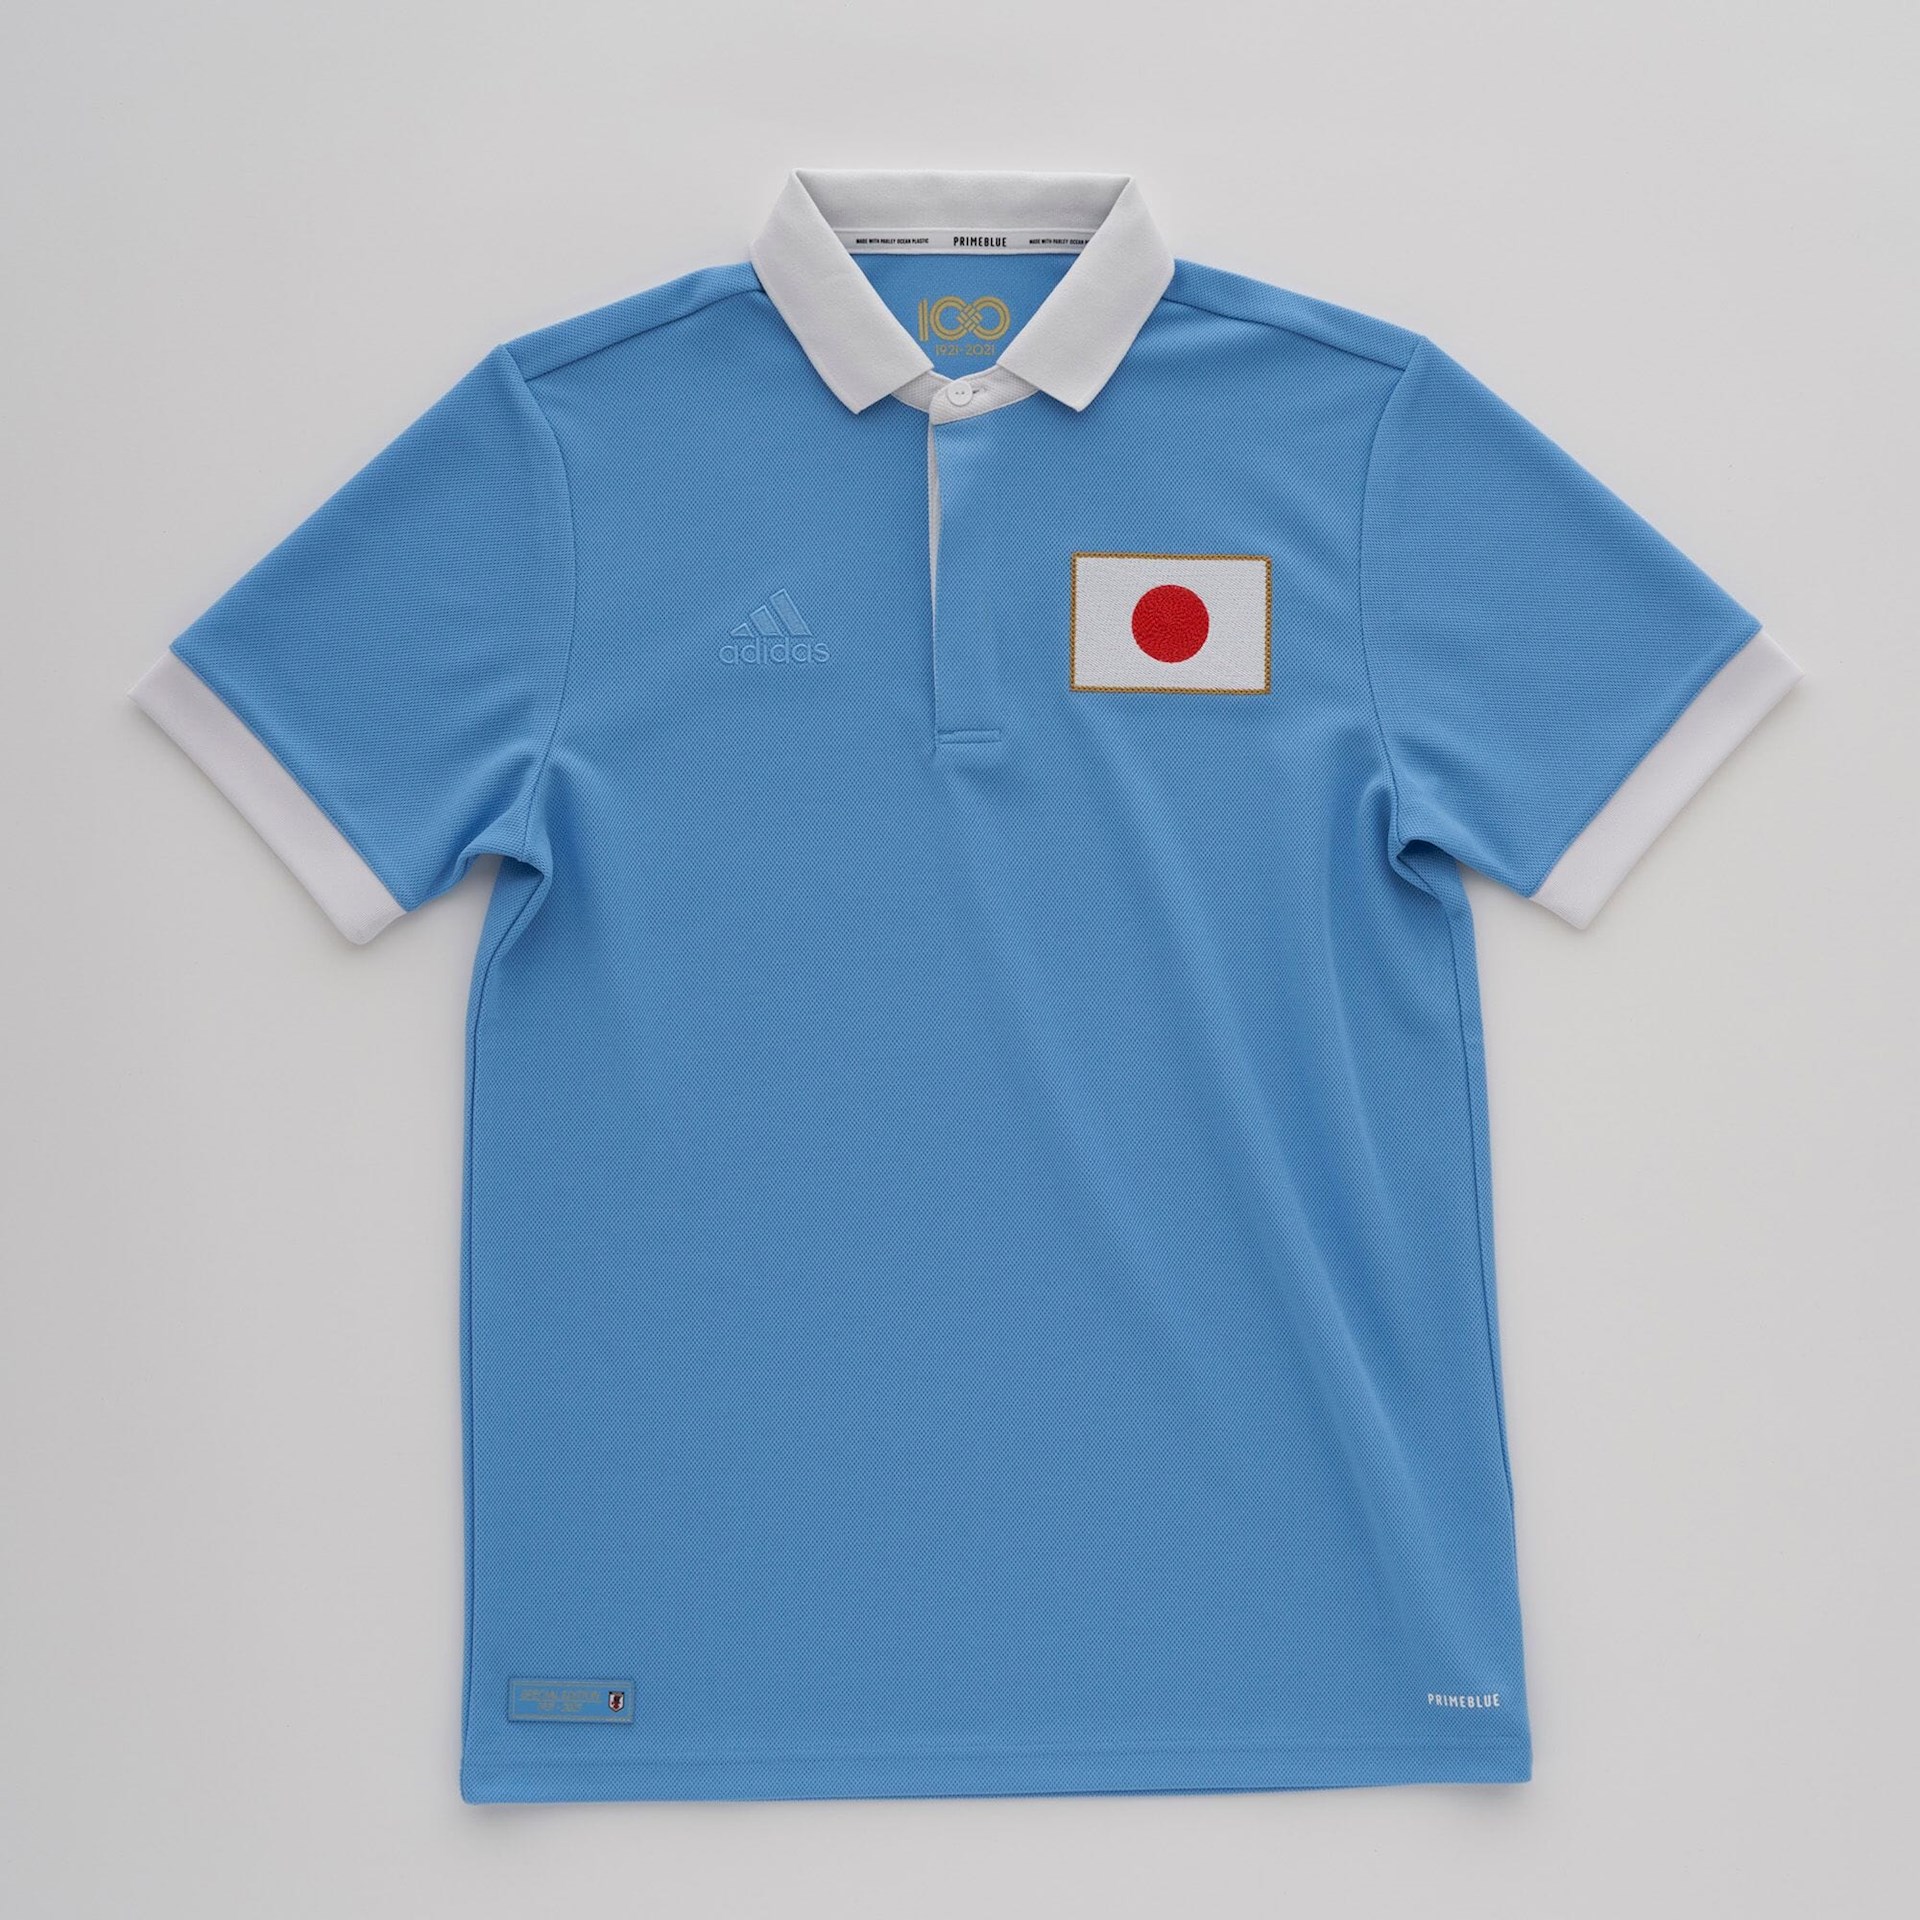 Japan voetbalshirt 100 jarig bestaan voetbalbond